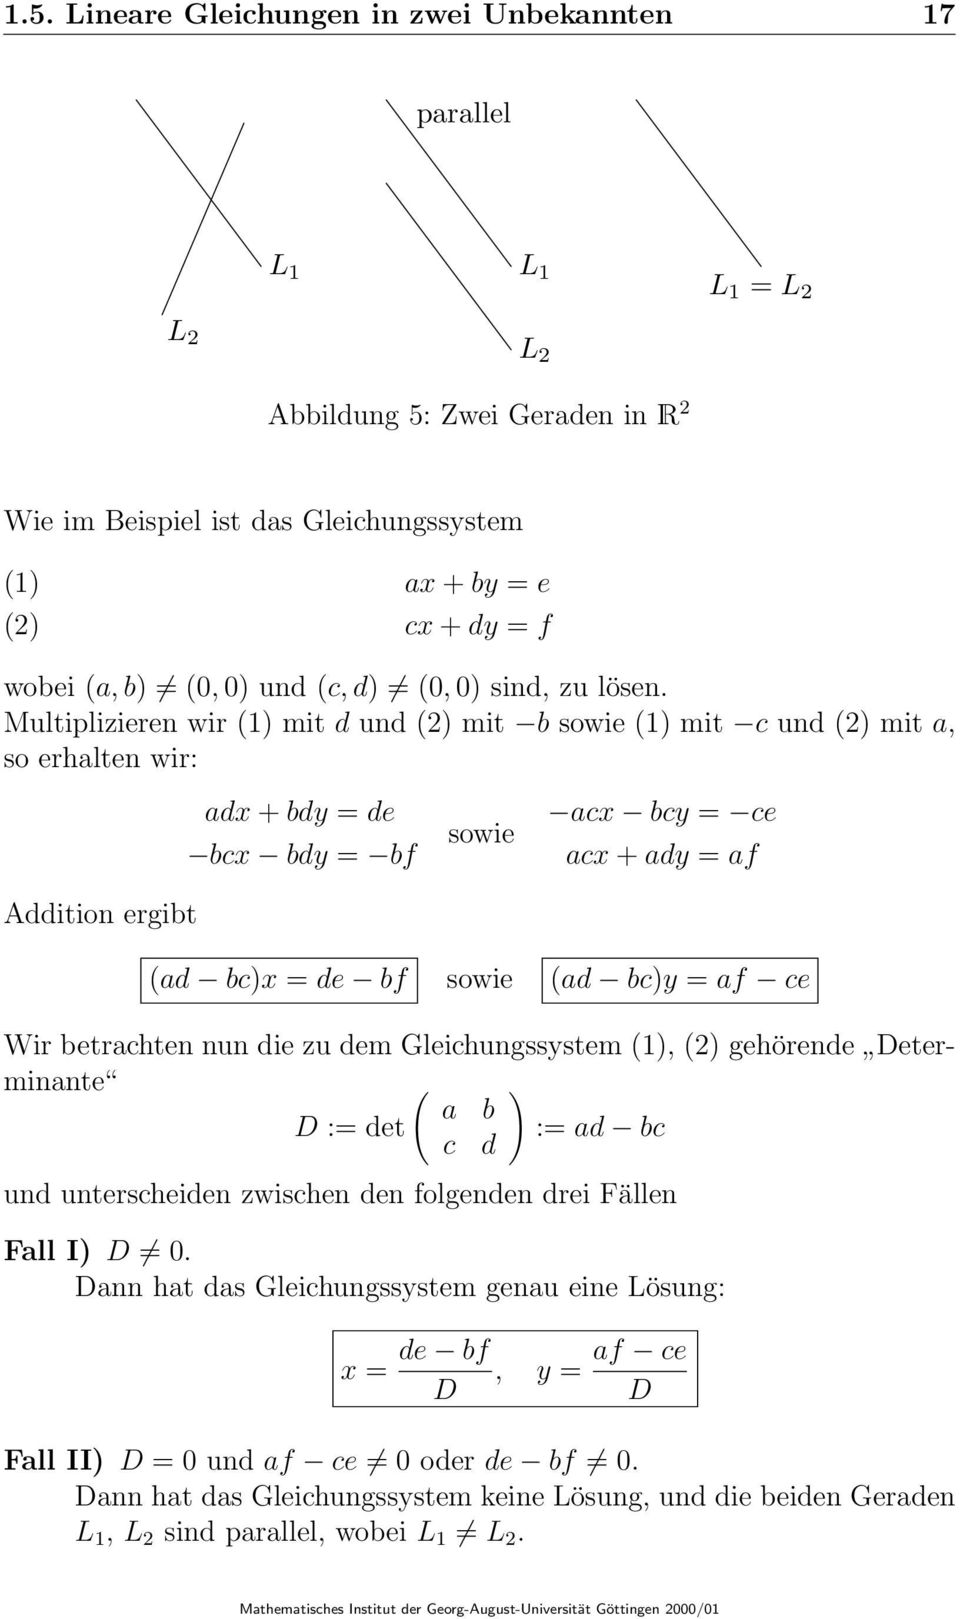 Multiplizieren wir (1) mit d und (2) mit b sowie (1) mit c und (2) mit a, so erhalten wir: Addition ergibt adx + bdy = de bcx bdy = bf sowie acx bcy = ce acx + ady = af (ad bc)x = de bf sowie (ad